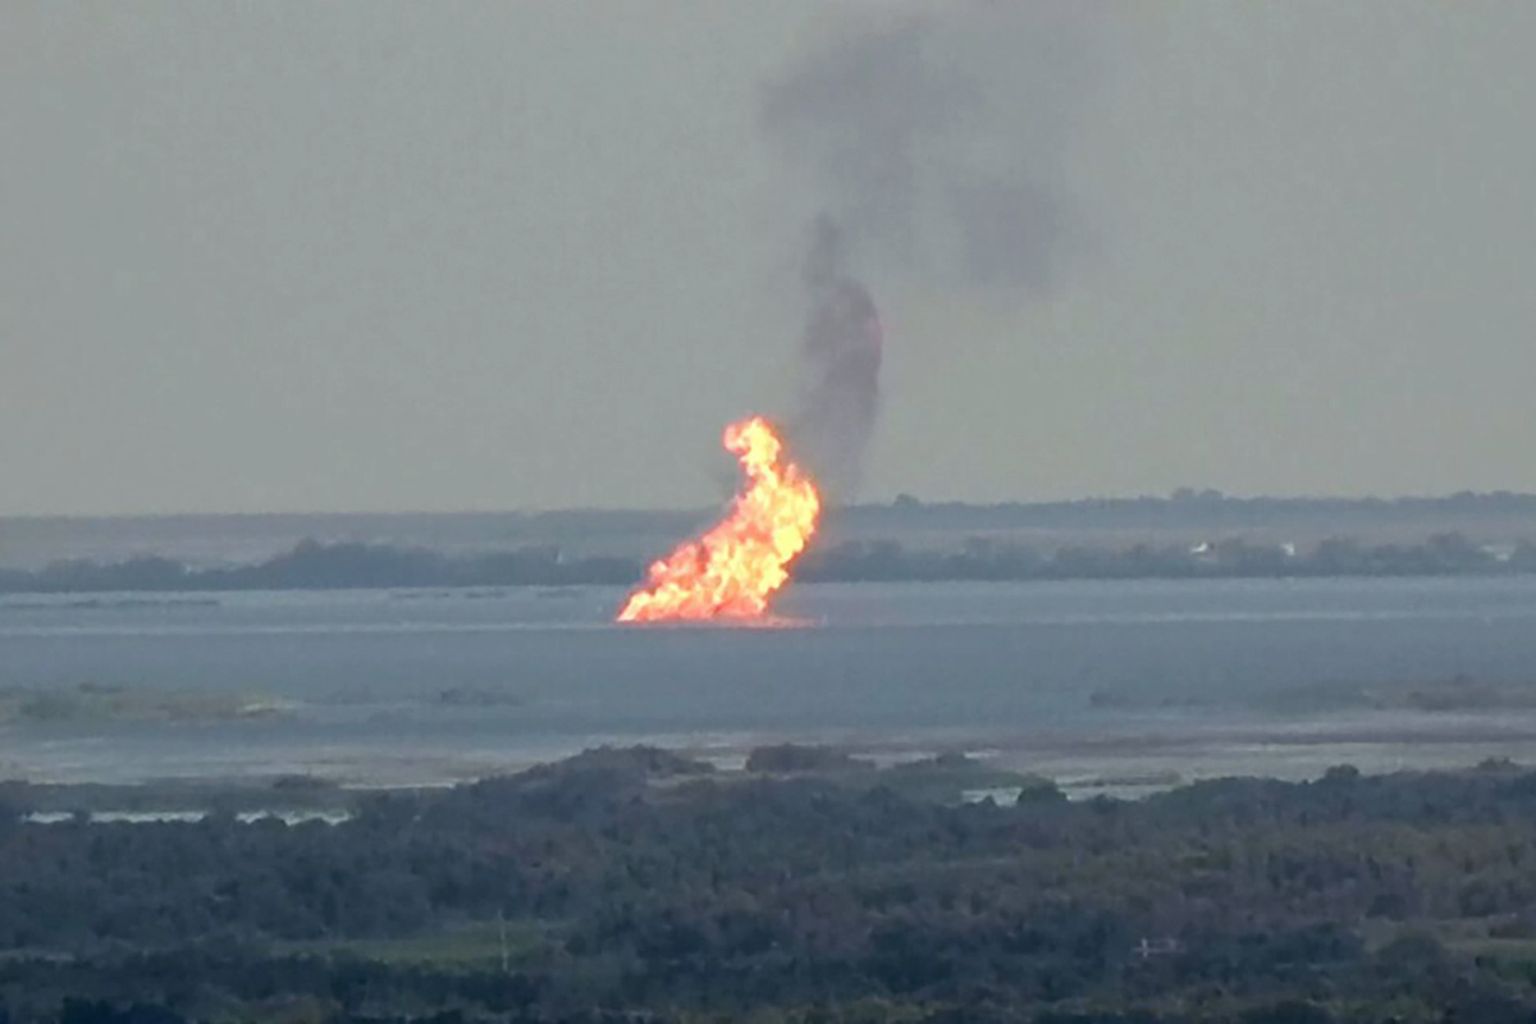 Kui süttiks Nord Streamist lekkiv gaas võiks küll väheneda lekke keskkonnamõju, kuid lisanduksid muud ohud. 9. septembril plahvatas Lery järve alune gaasijuhe New Orleansi lähedal ja süttis sealt lekkiv gaas.